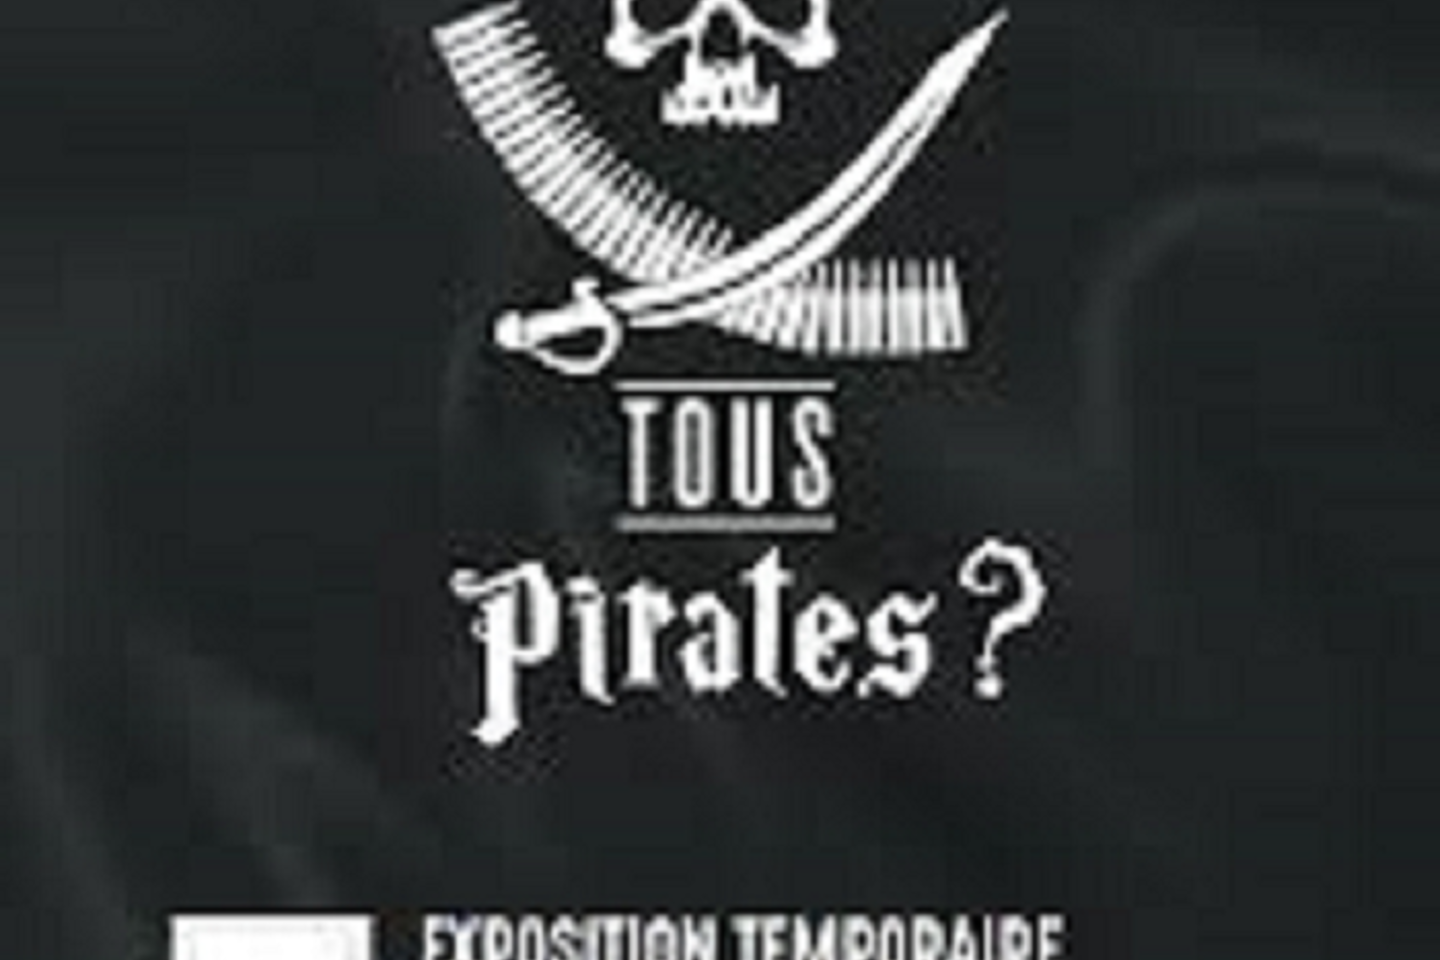 Exposition "Tous pirates ?"